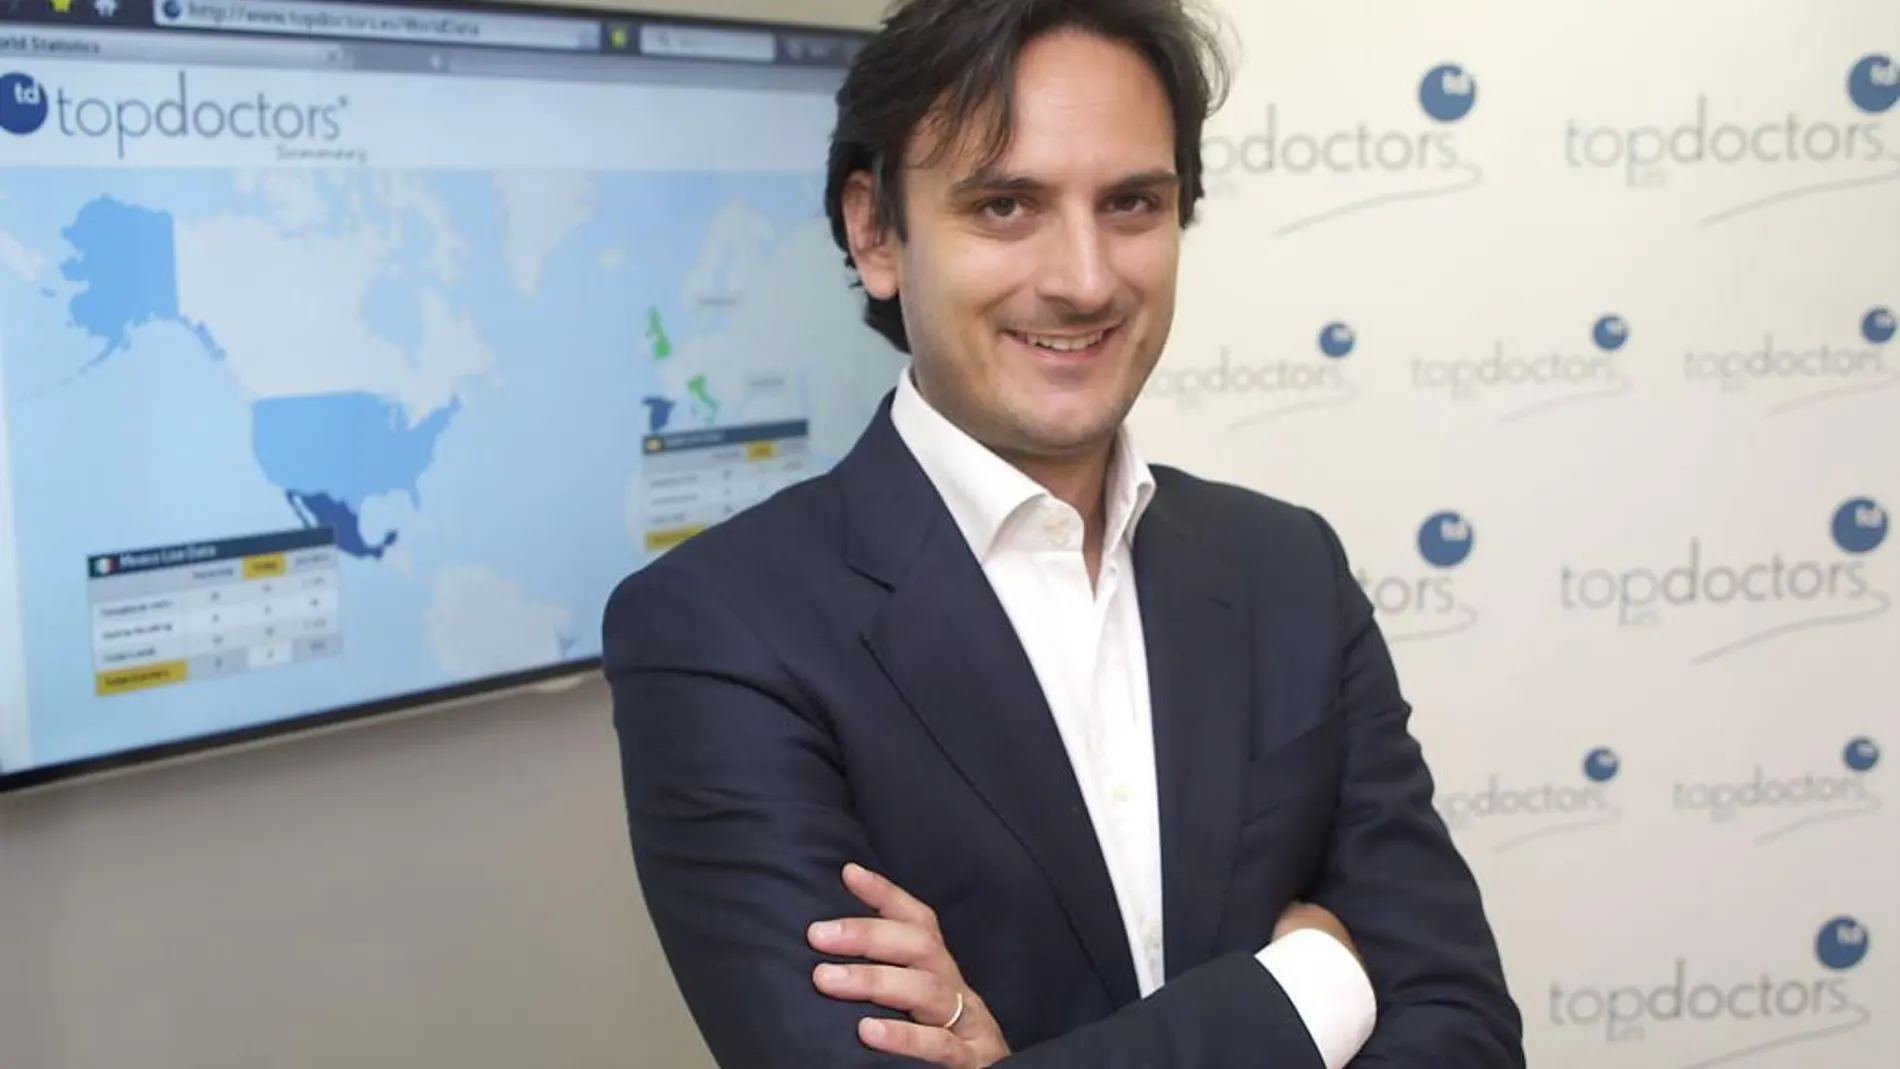 Alberto Porciani / CEO de Top Doctors